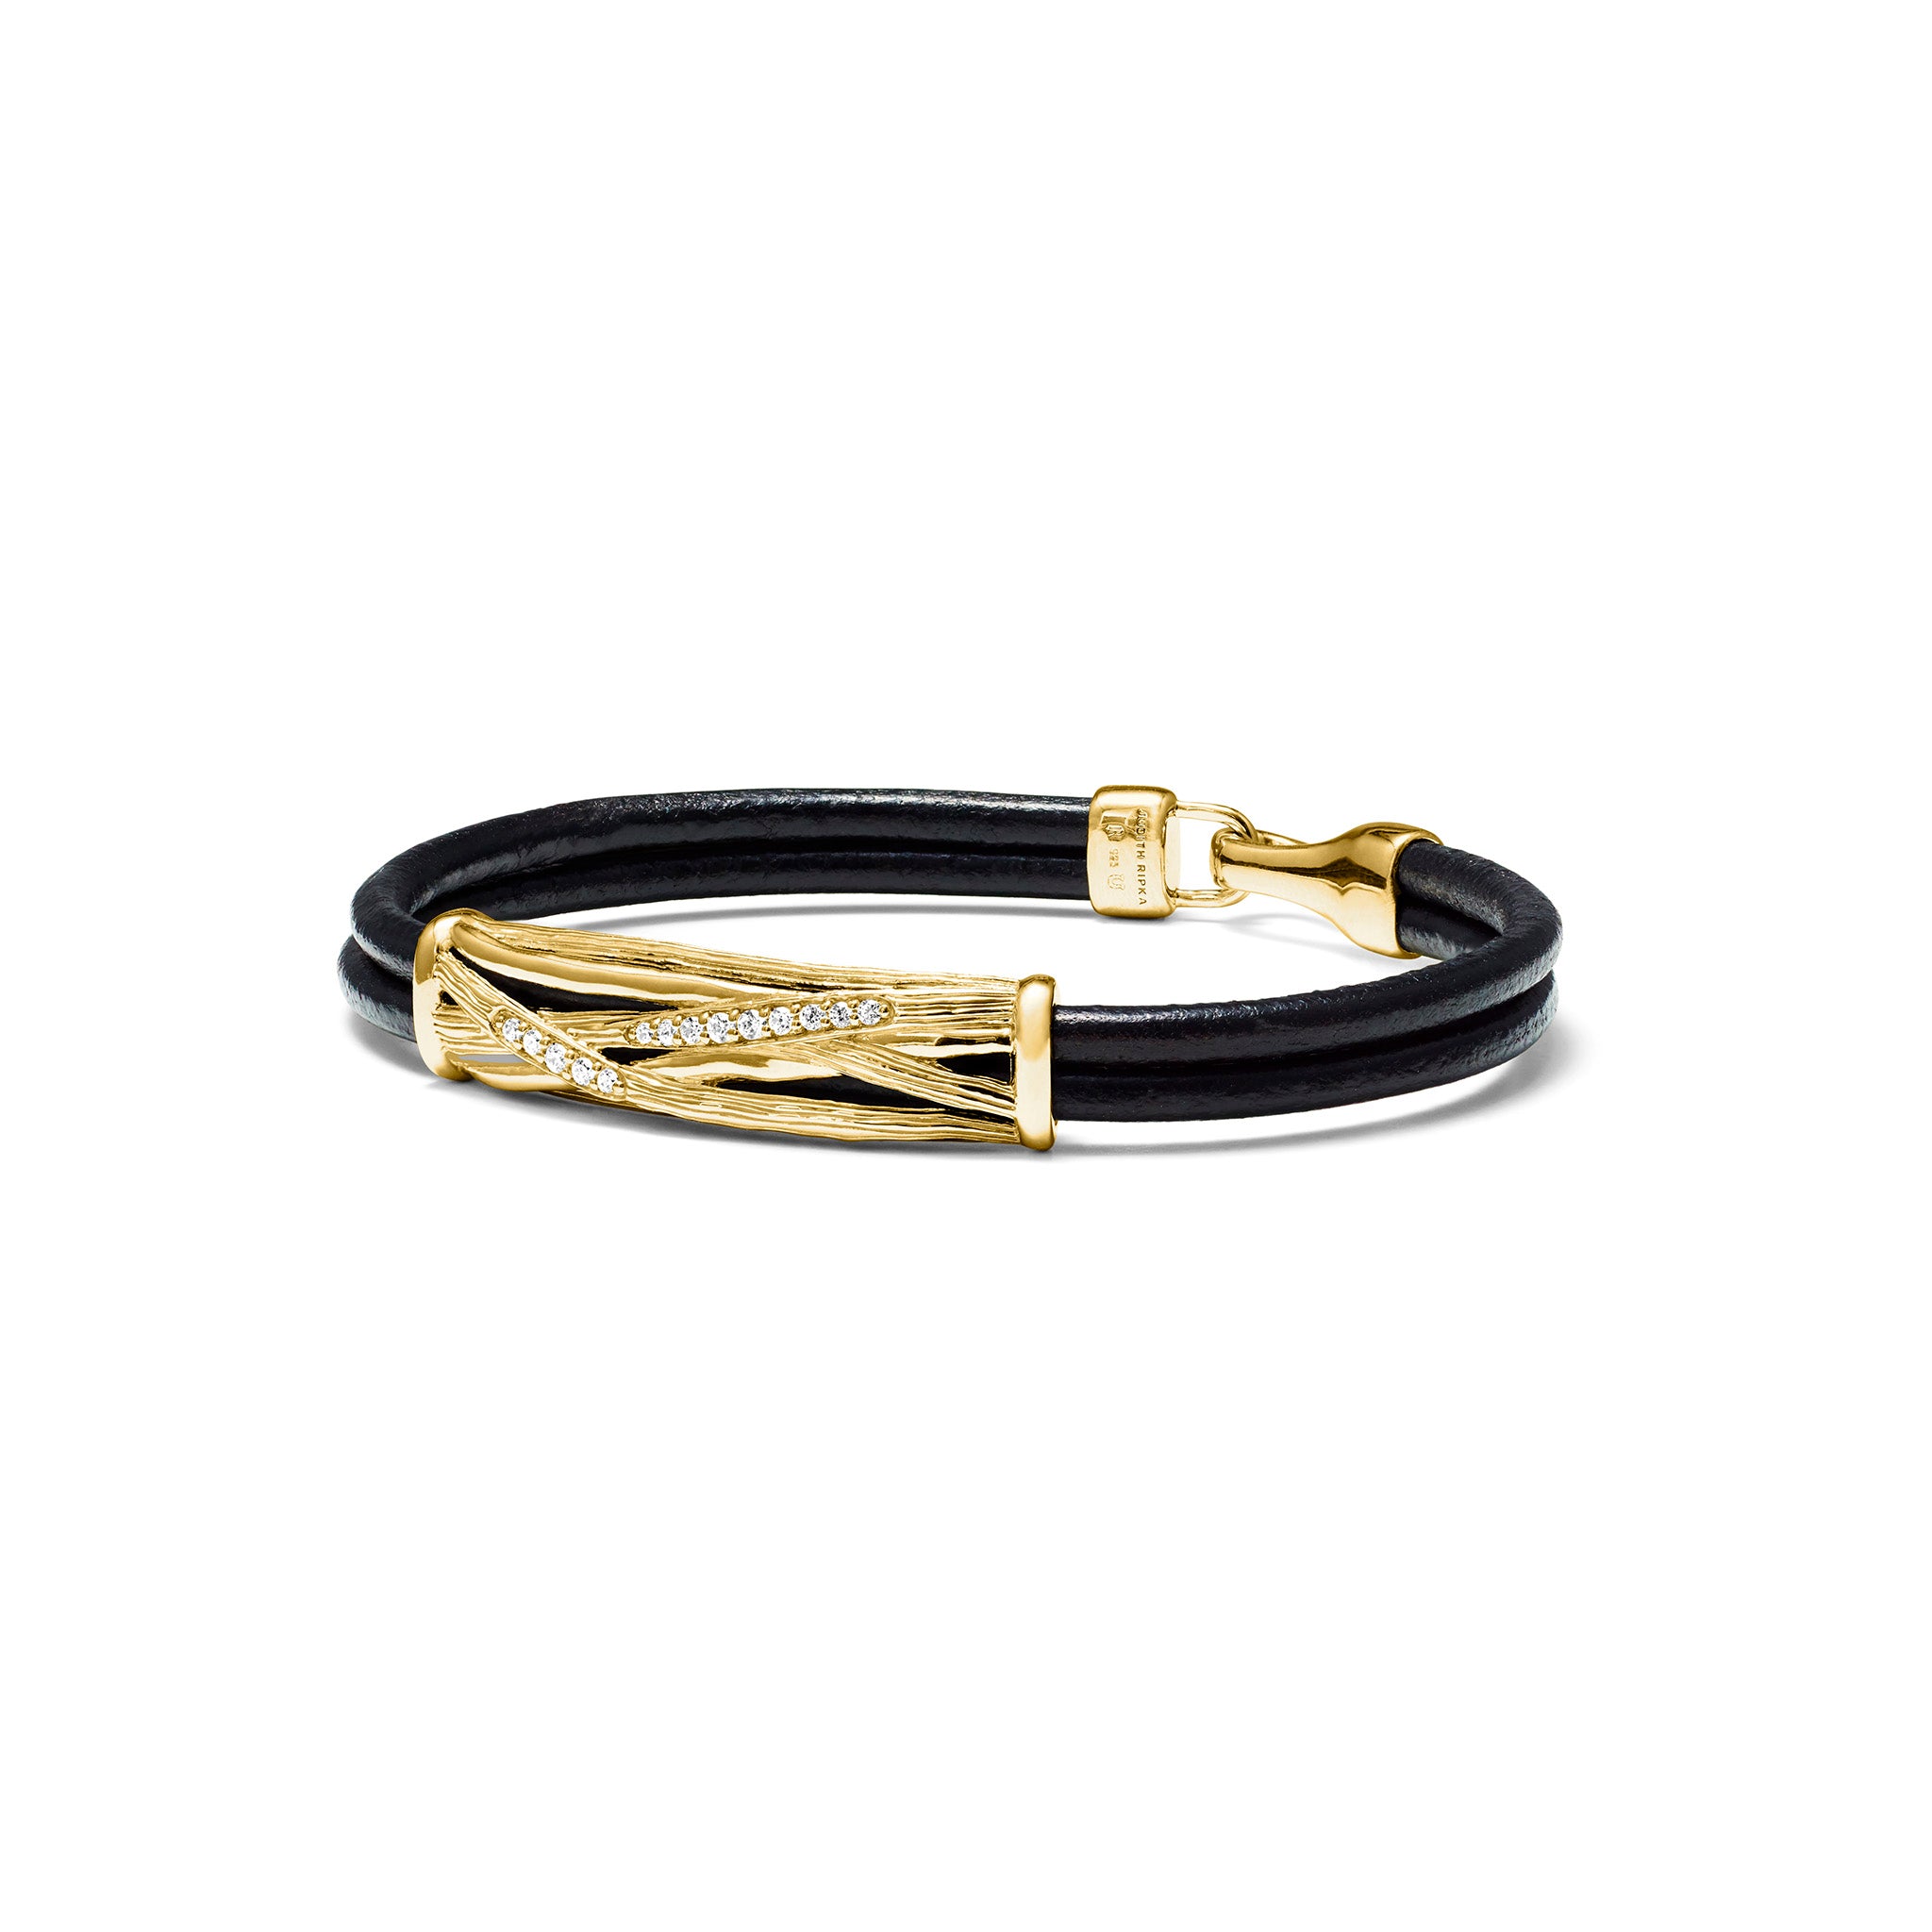 Santorini Black Leather Cord Bracelet With Diamonds In 18K